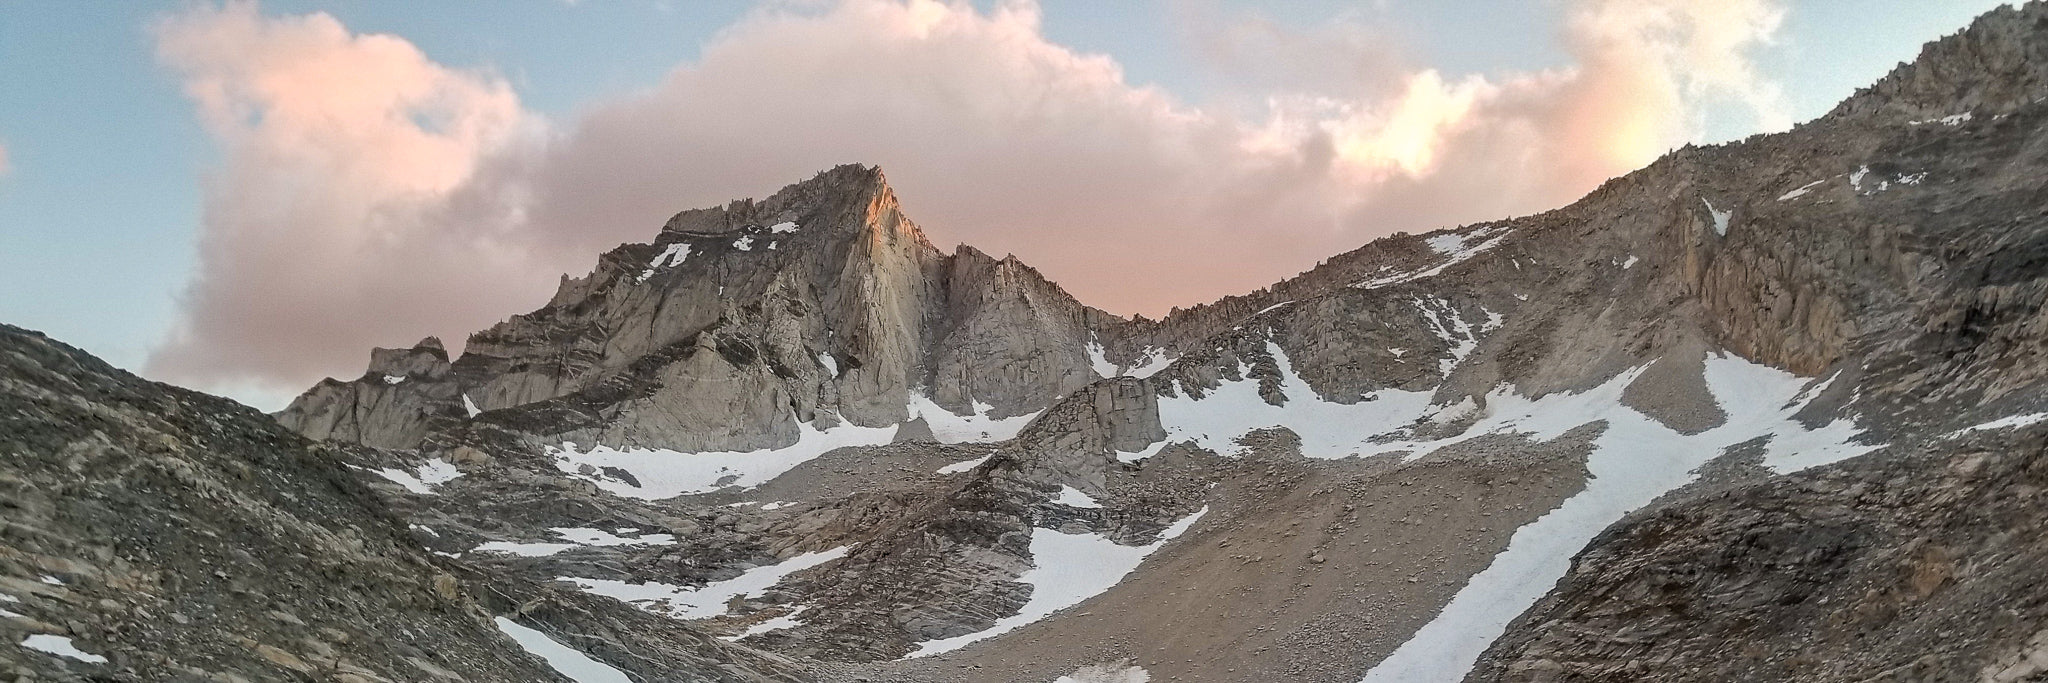 Eastern Sierra Alpine Climbing